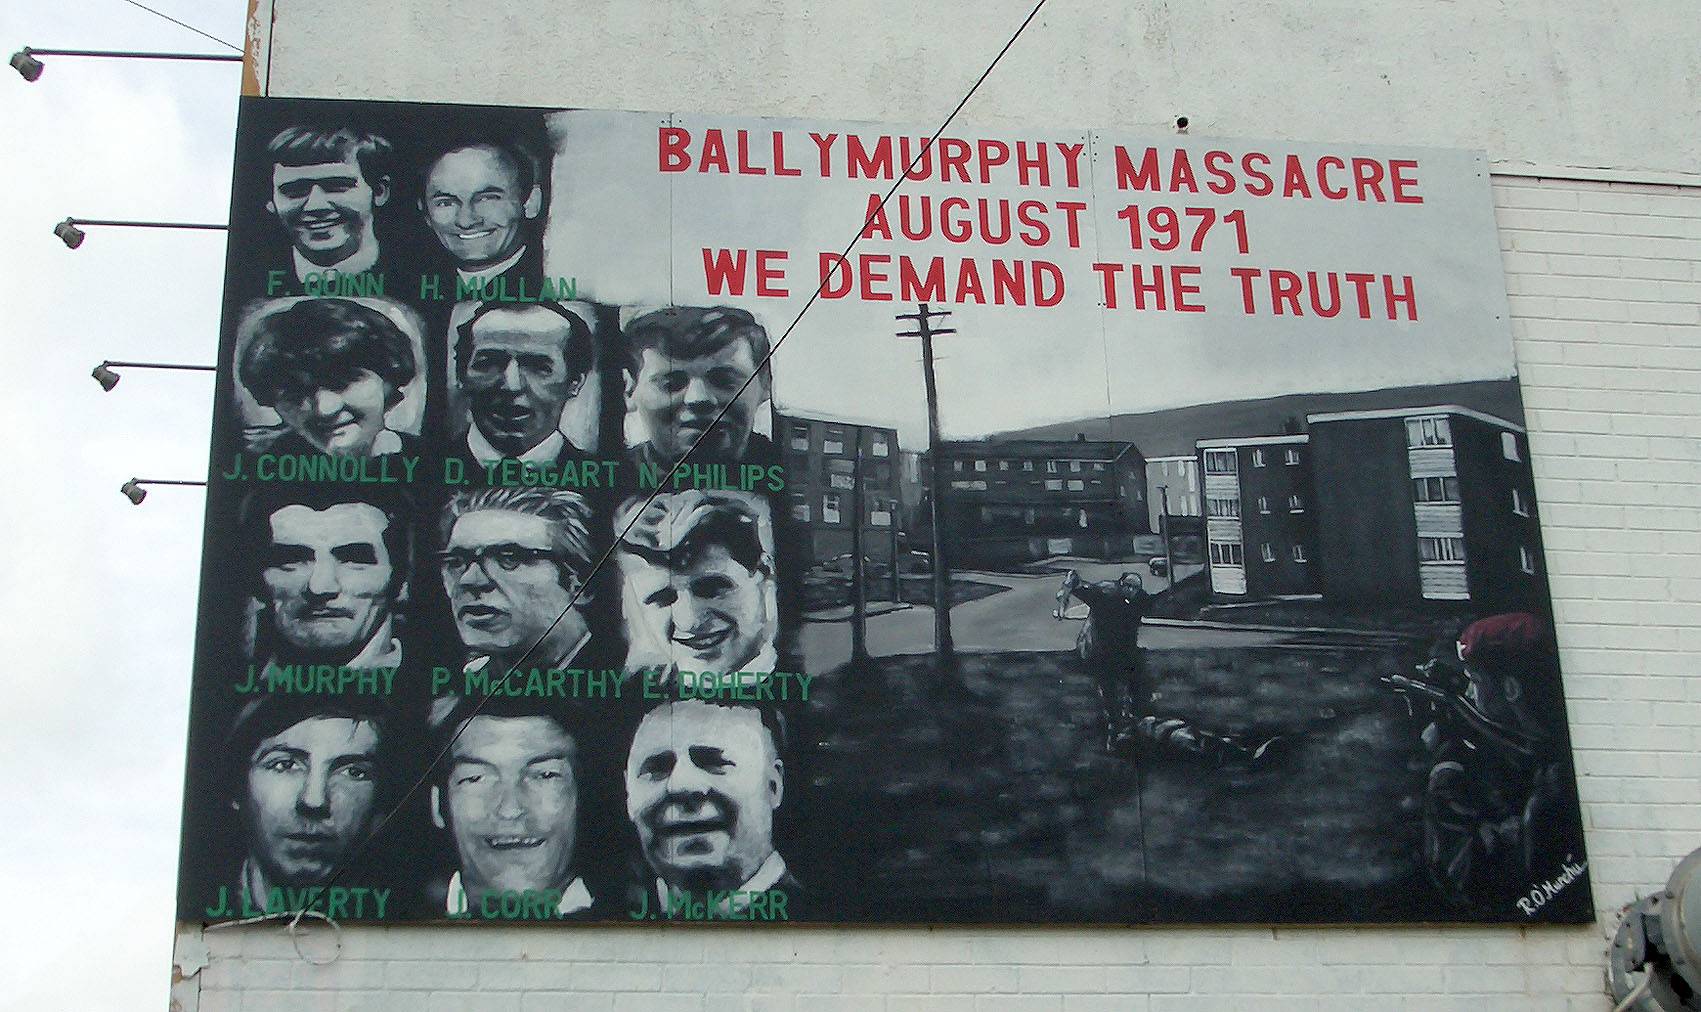 Фреска в Белфасте, Ирландия, посвященная жертвам резни в Баллимерфи в 1971 году, когда британские солдаты убили 11 безоружных мирных жителей. Северная Ирландия